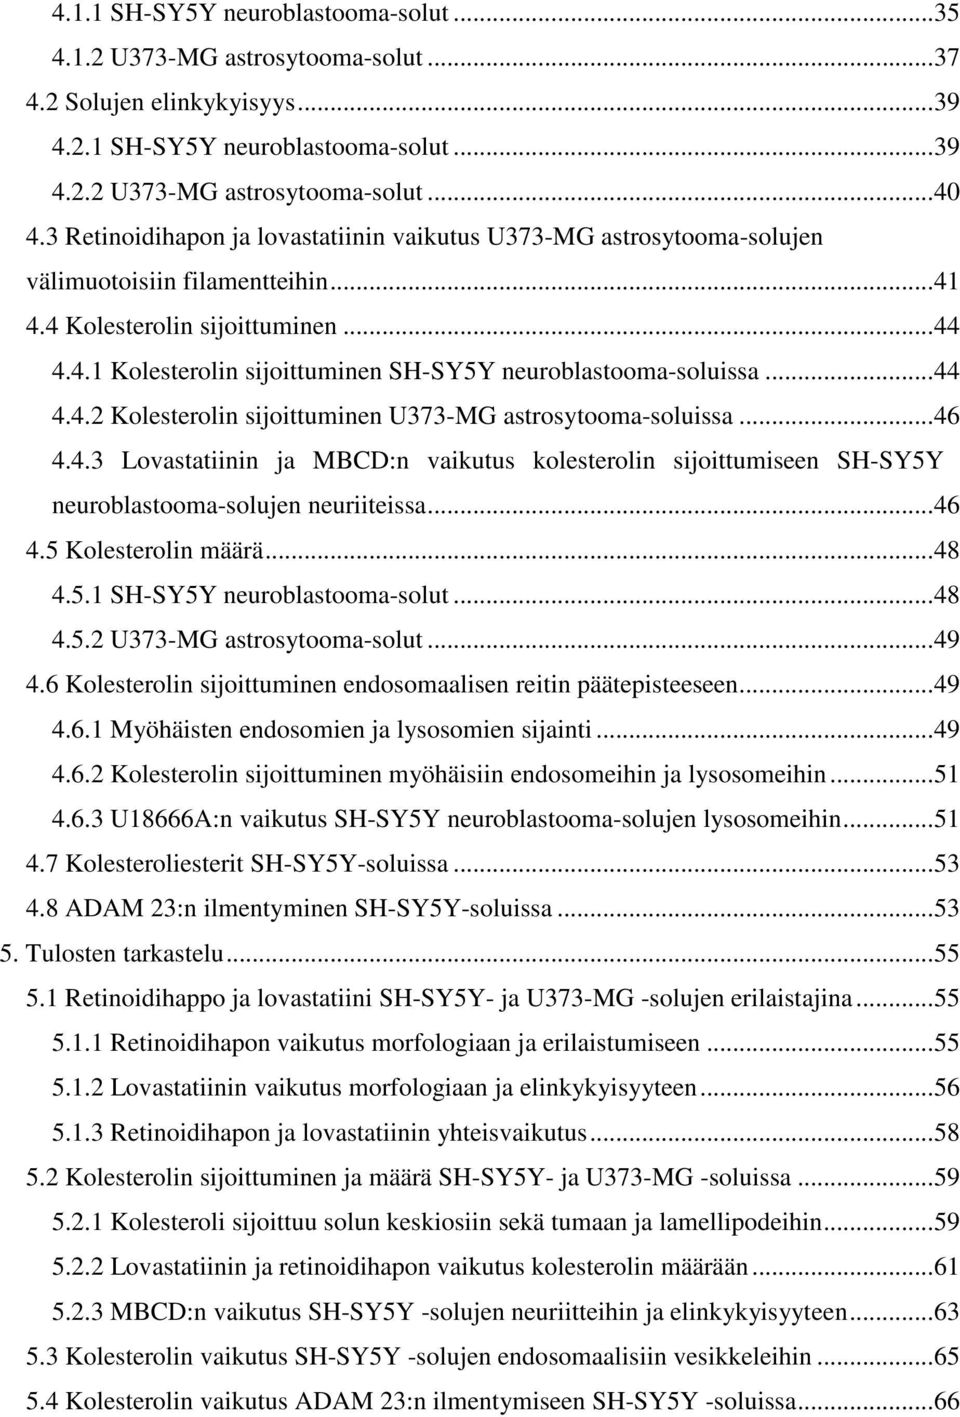 .. 44 4.4.2 Kolesterolin sijoittuminen U373-MG astrosytooma-soluissa... 46 4.4.3 Lovastatiinin ja MBCD:n vaikutus kolesterolin sijoittumiseen SH-SY5Y neuroblastooma-solujen neuriiteissa... 46 4.5 Kolesterolin määrä.